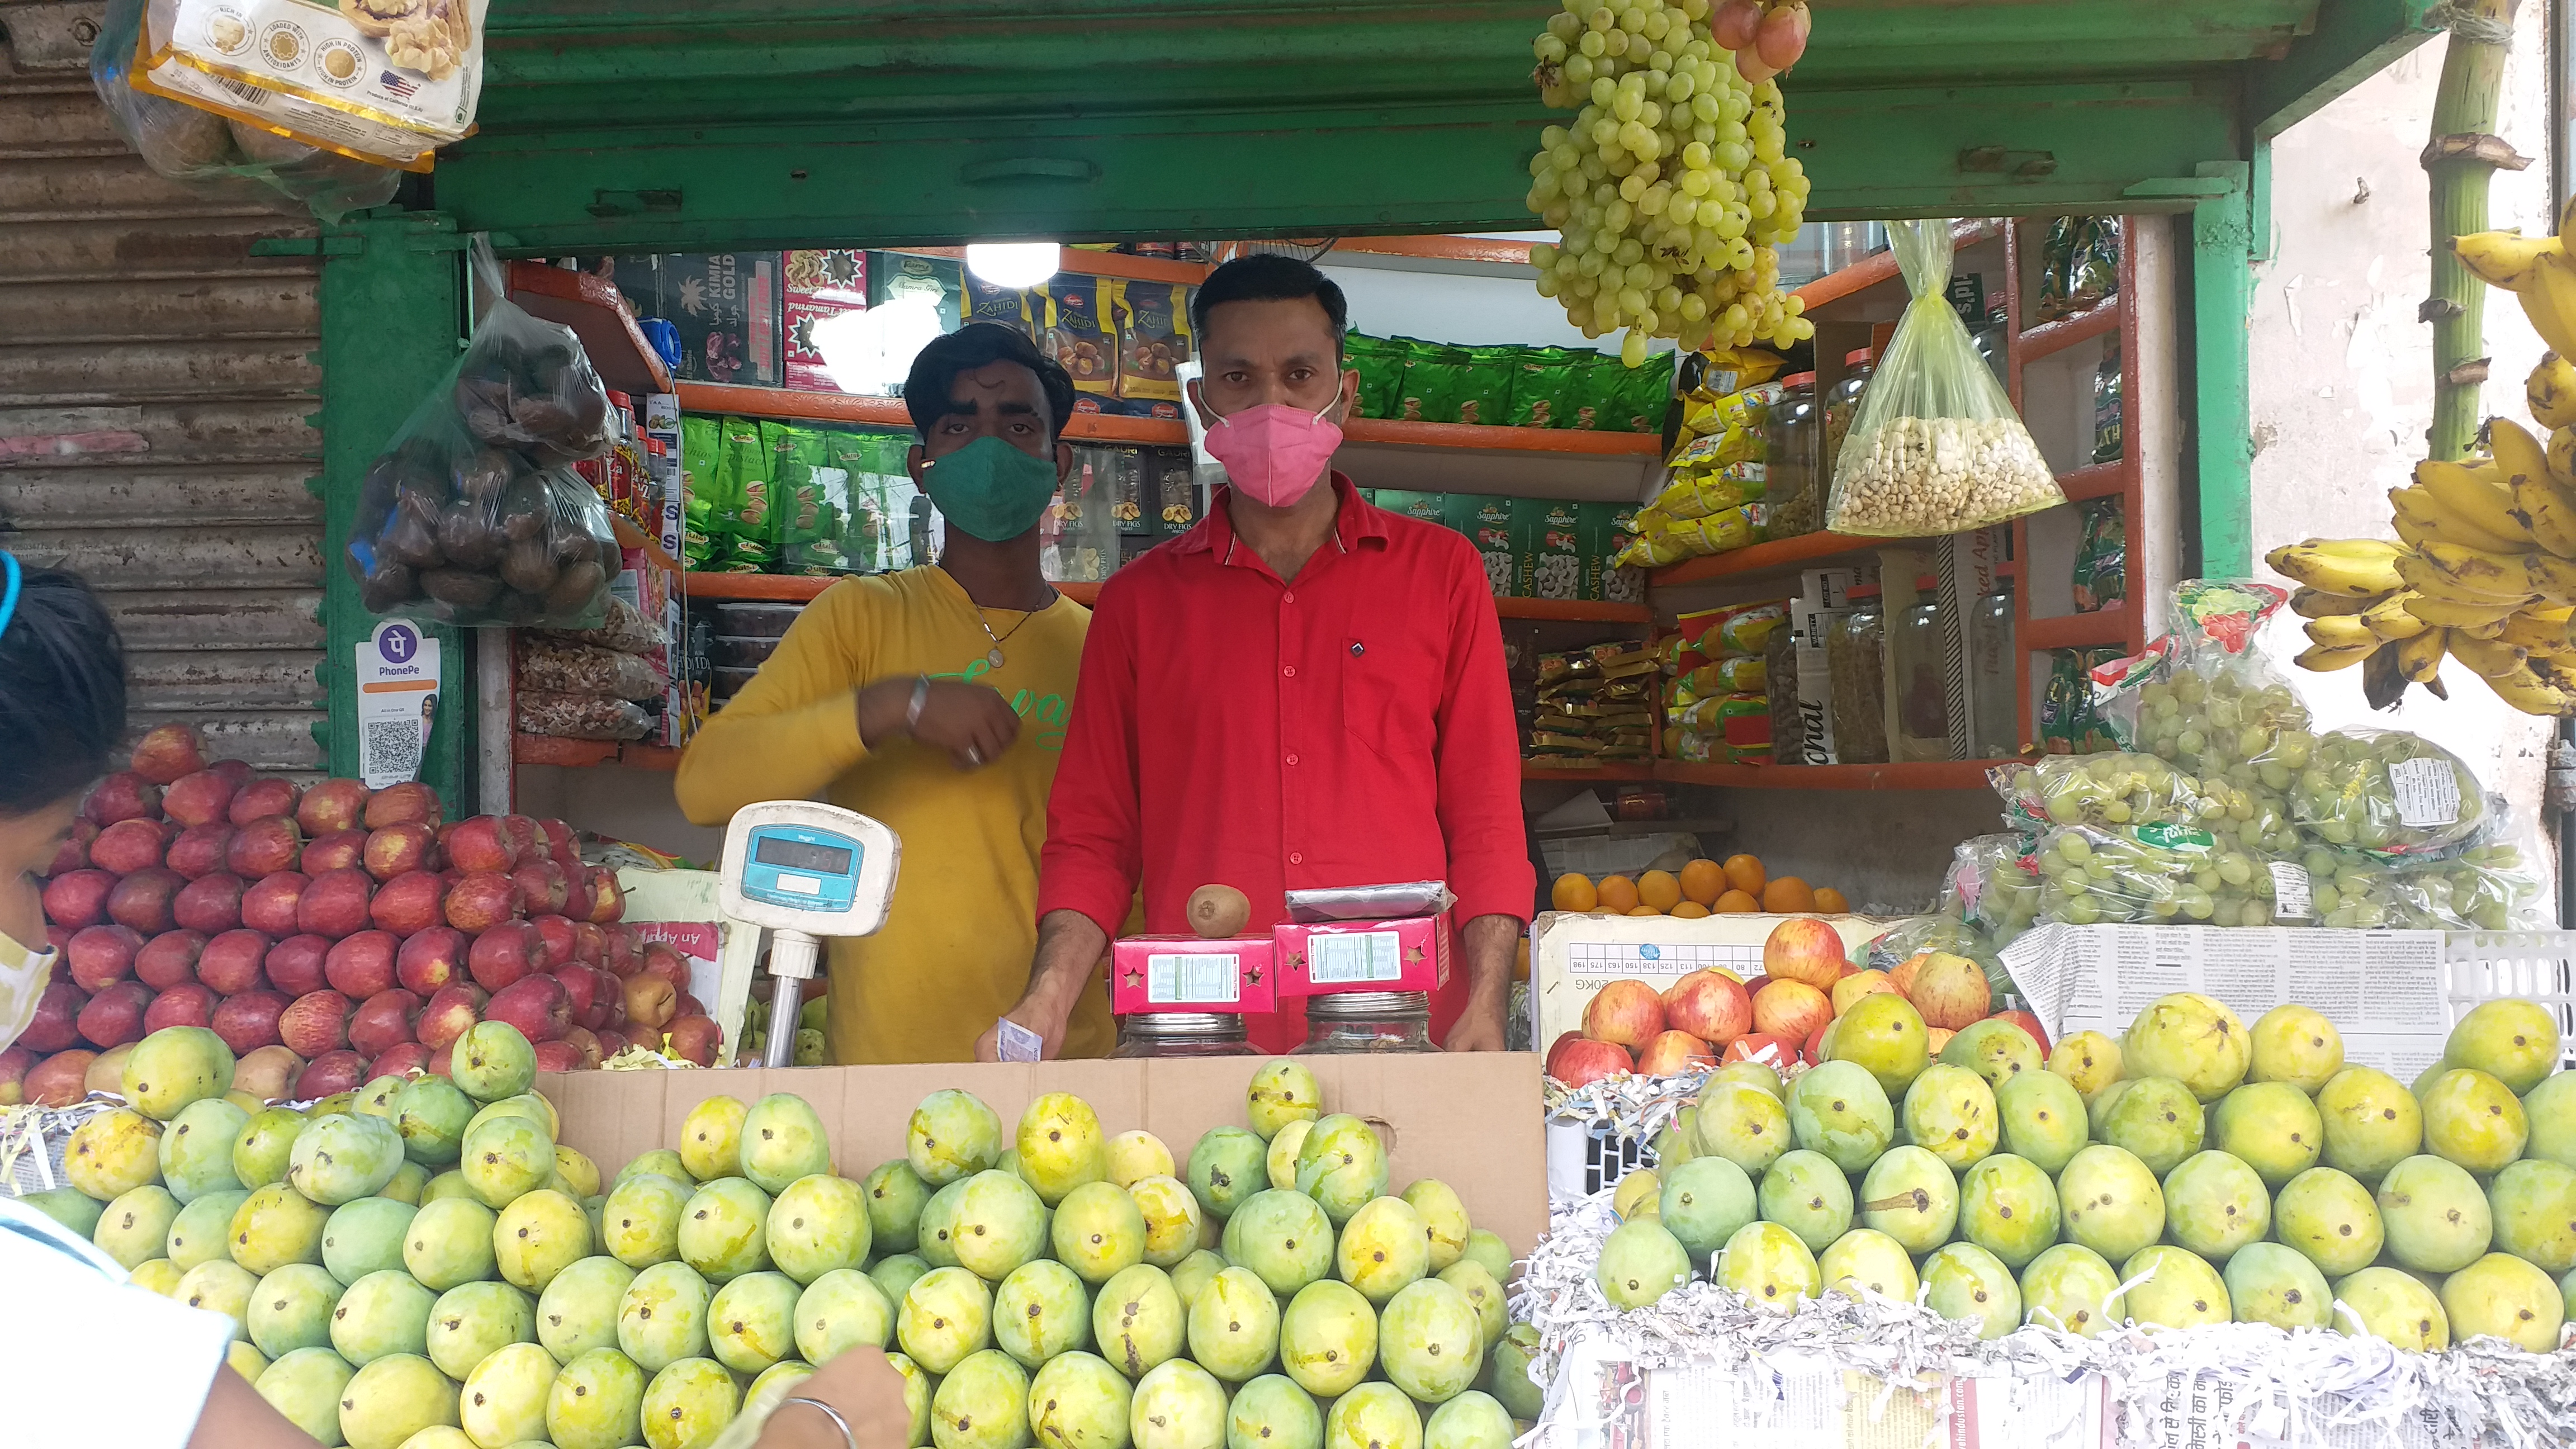 Price of fruit in dumka increased when bus movement from Kolkata in lockdown stopped